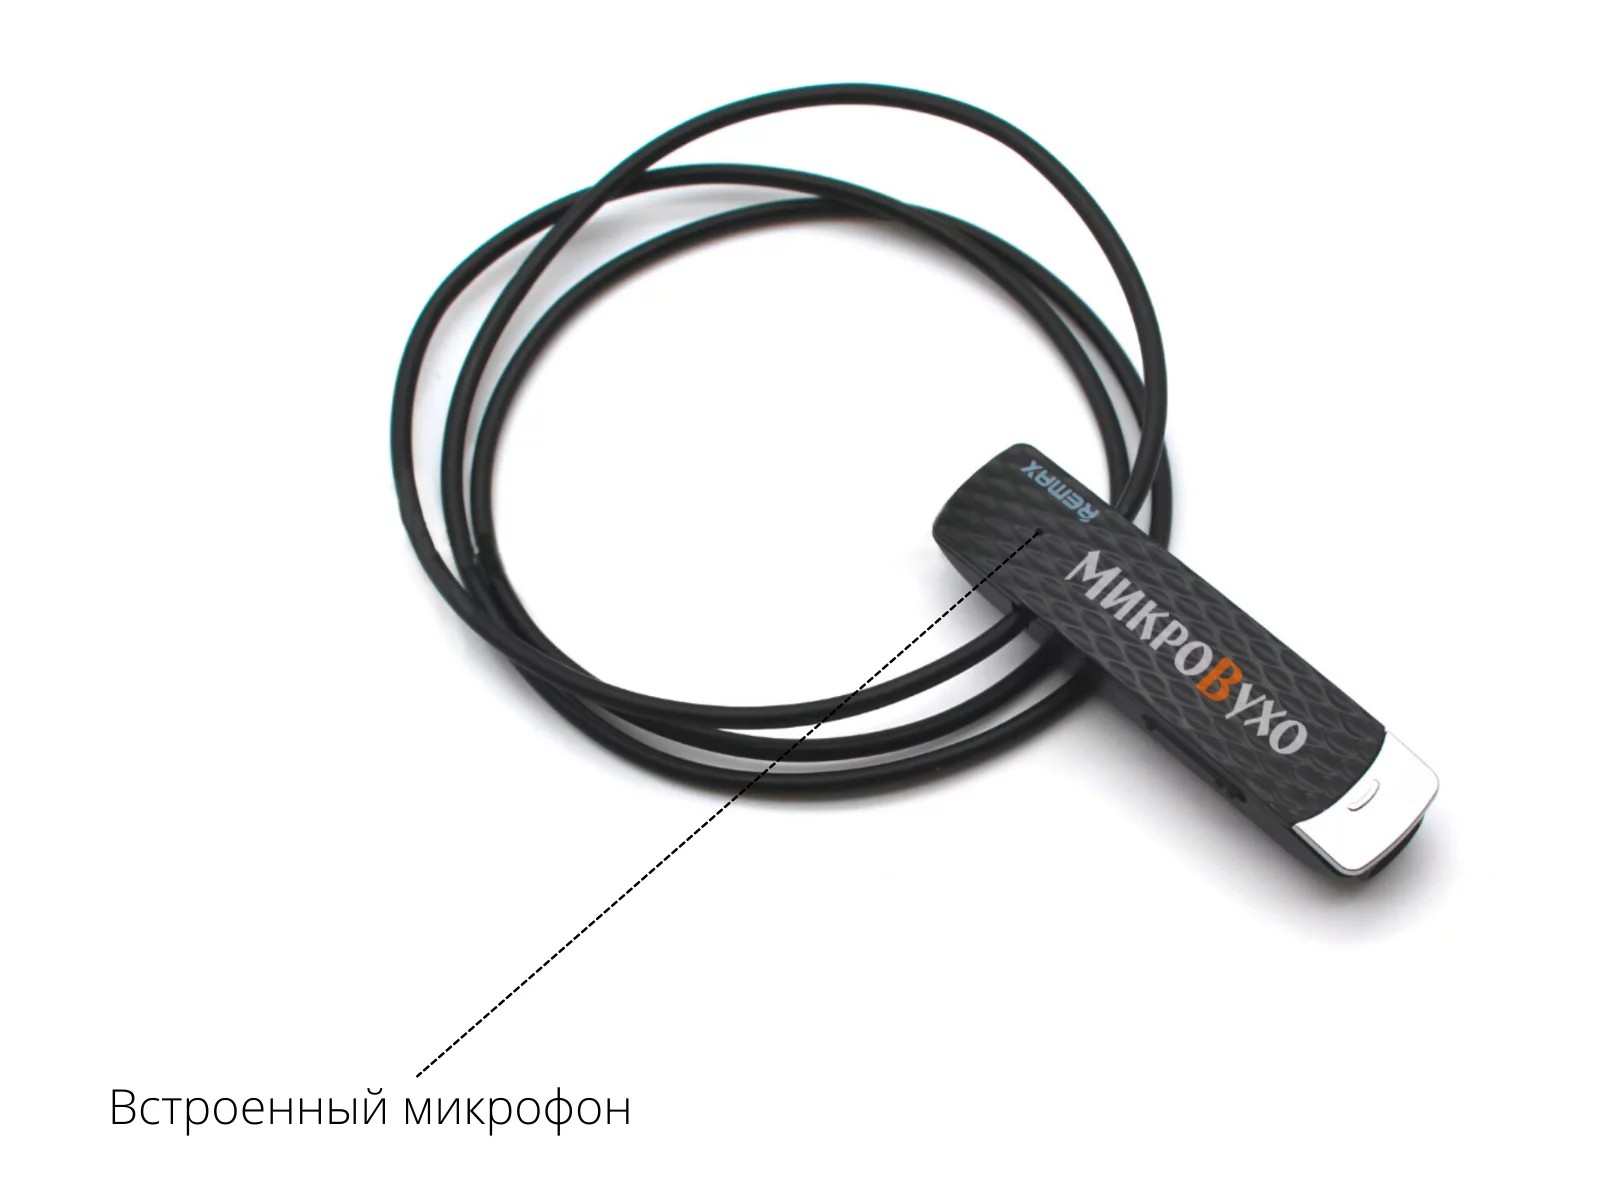 Гарнитура Bluetooth Remax с магнитными микронаушниками 2 мм 3